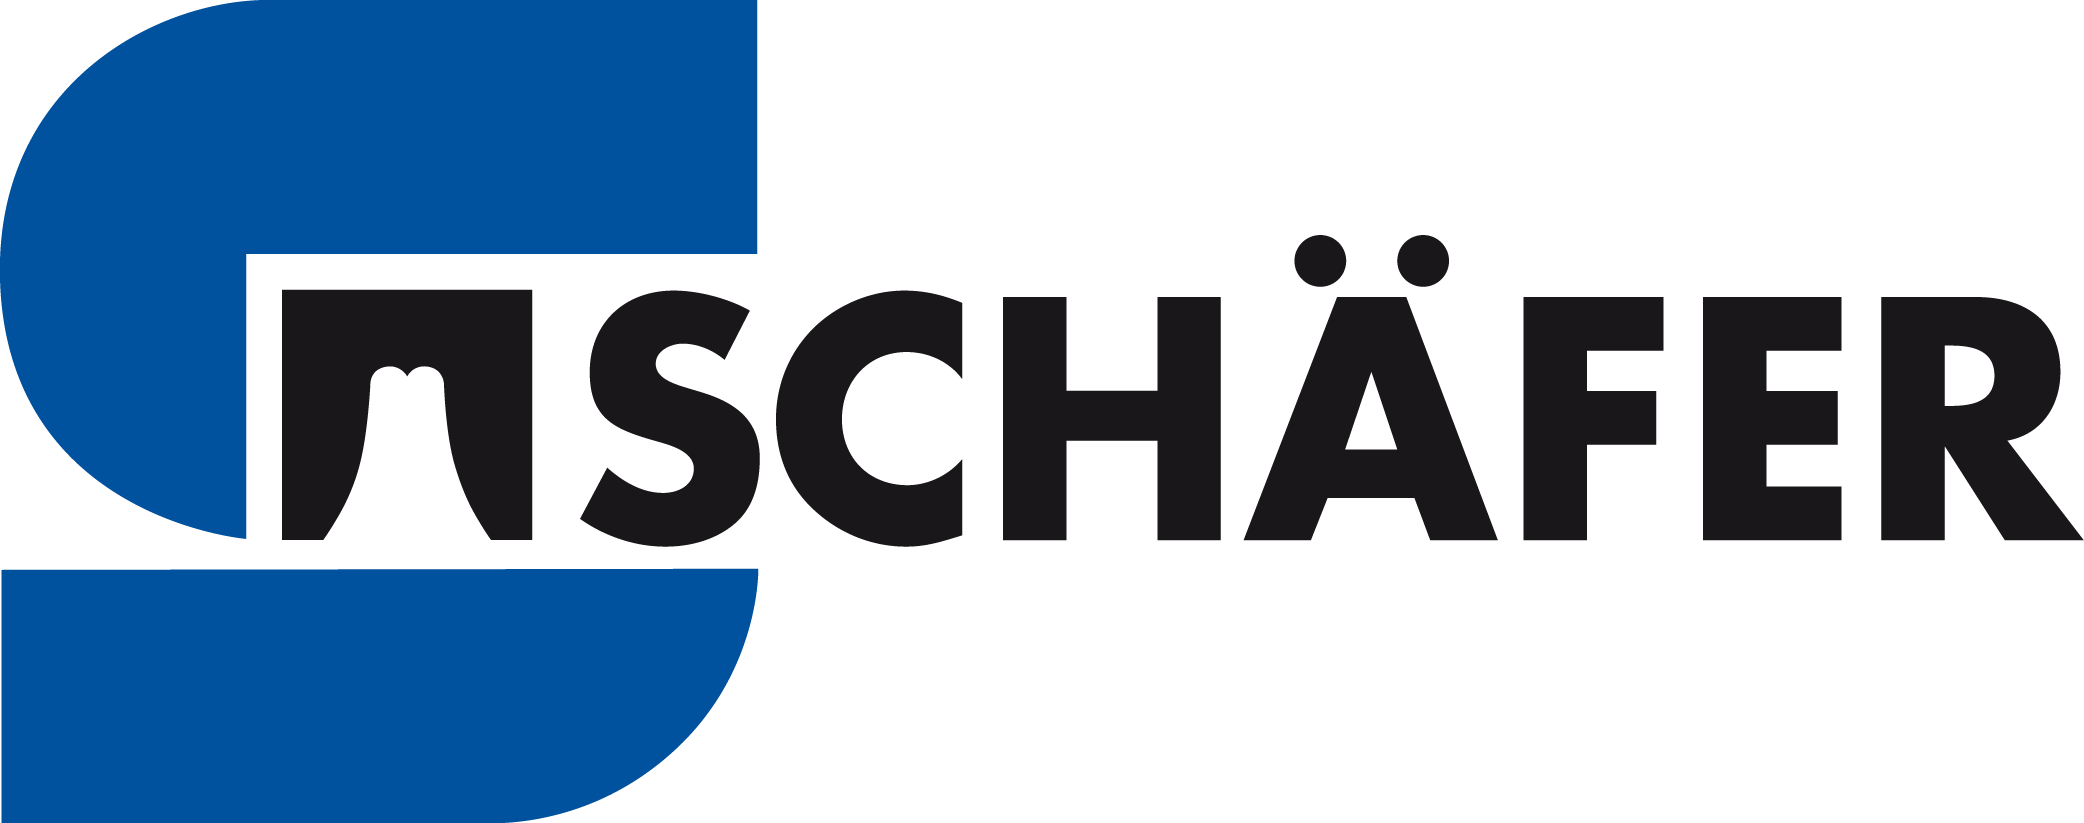 Schäfer Werkzeug- und Sondermaschinenbau GmbH